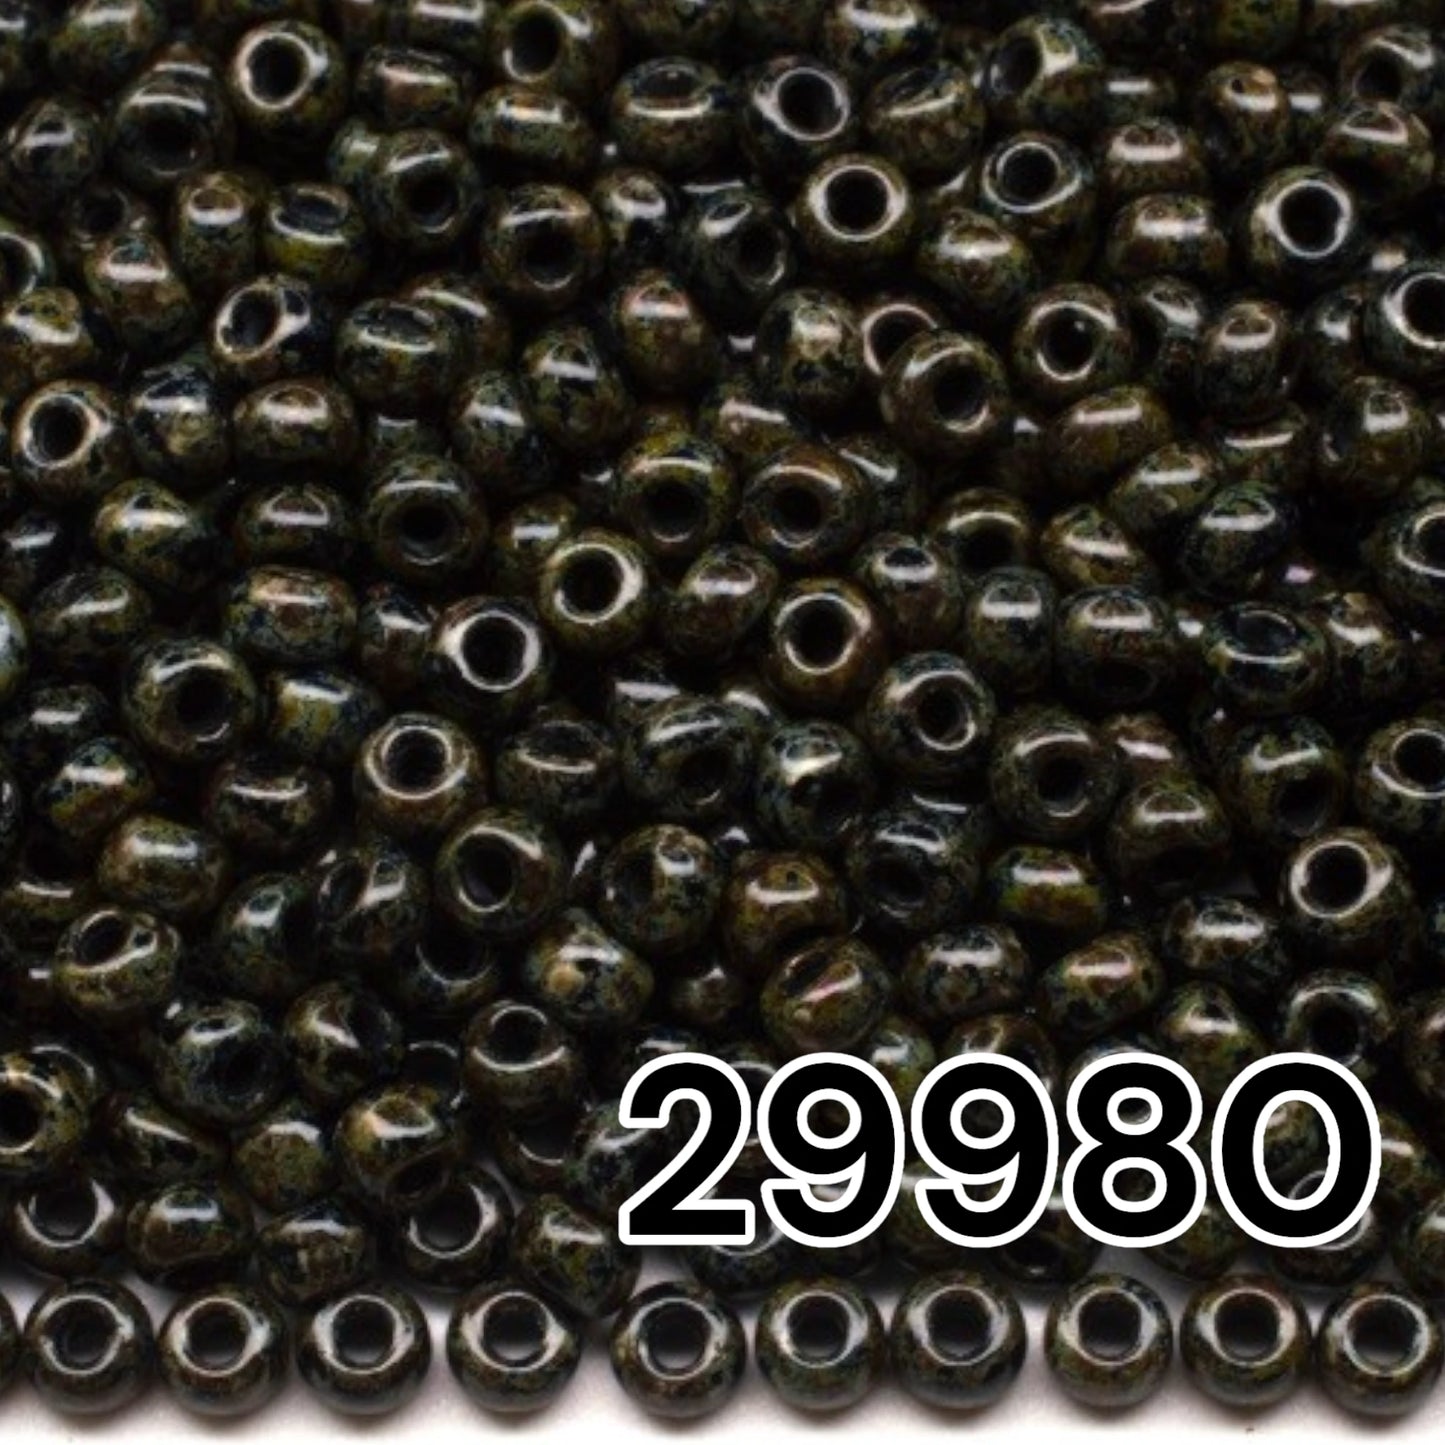 29980 Tschechische Rocailles PRECIOSA rund 10/0 Grün Grau Travertin.